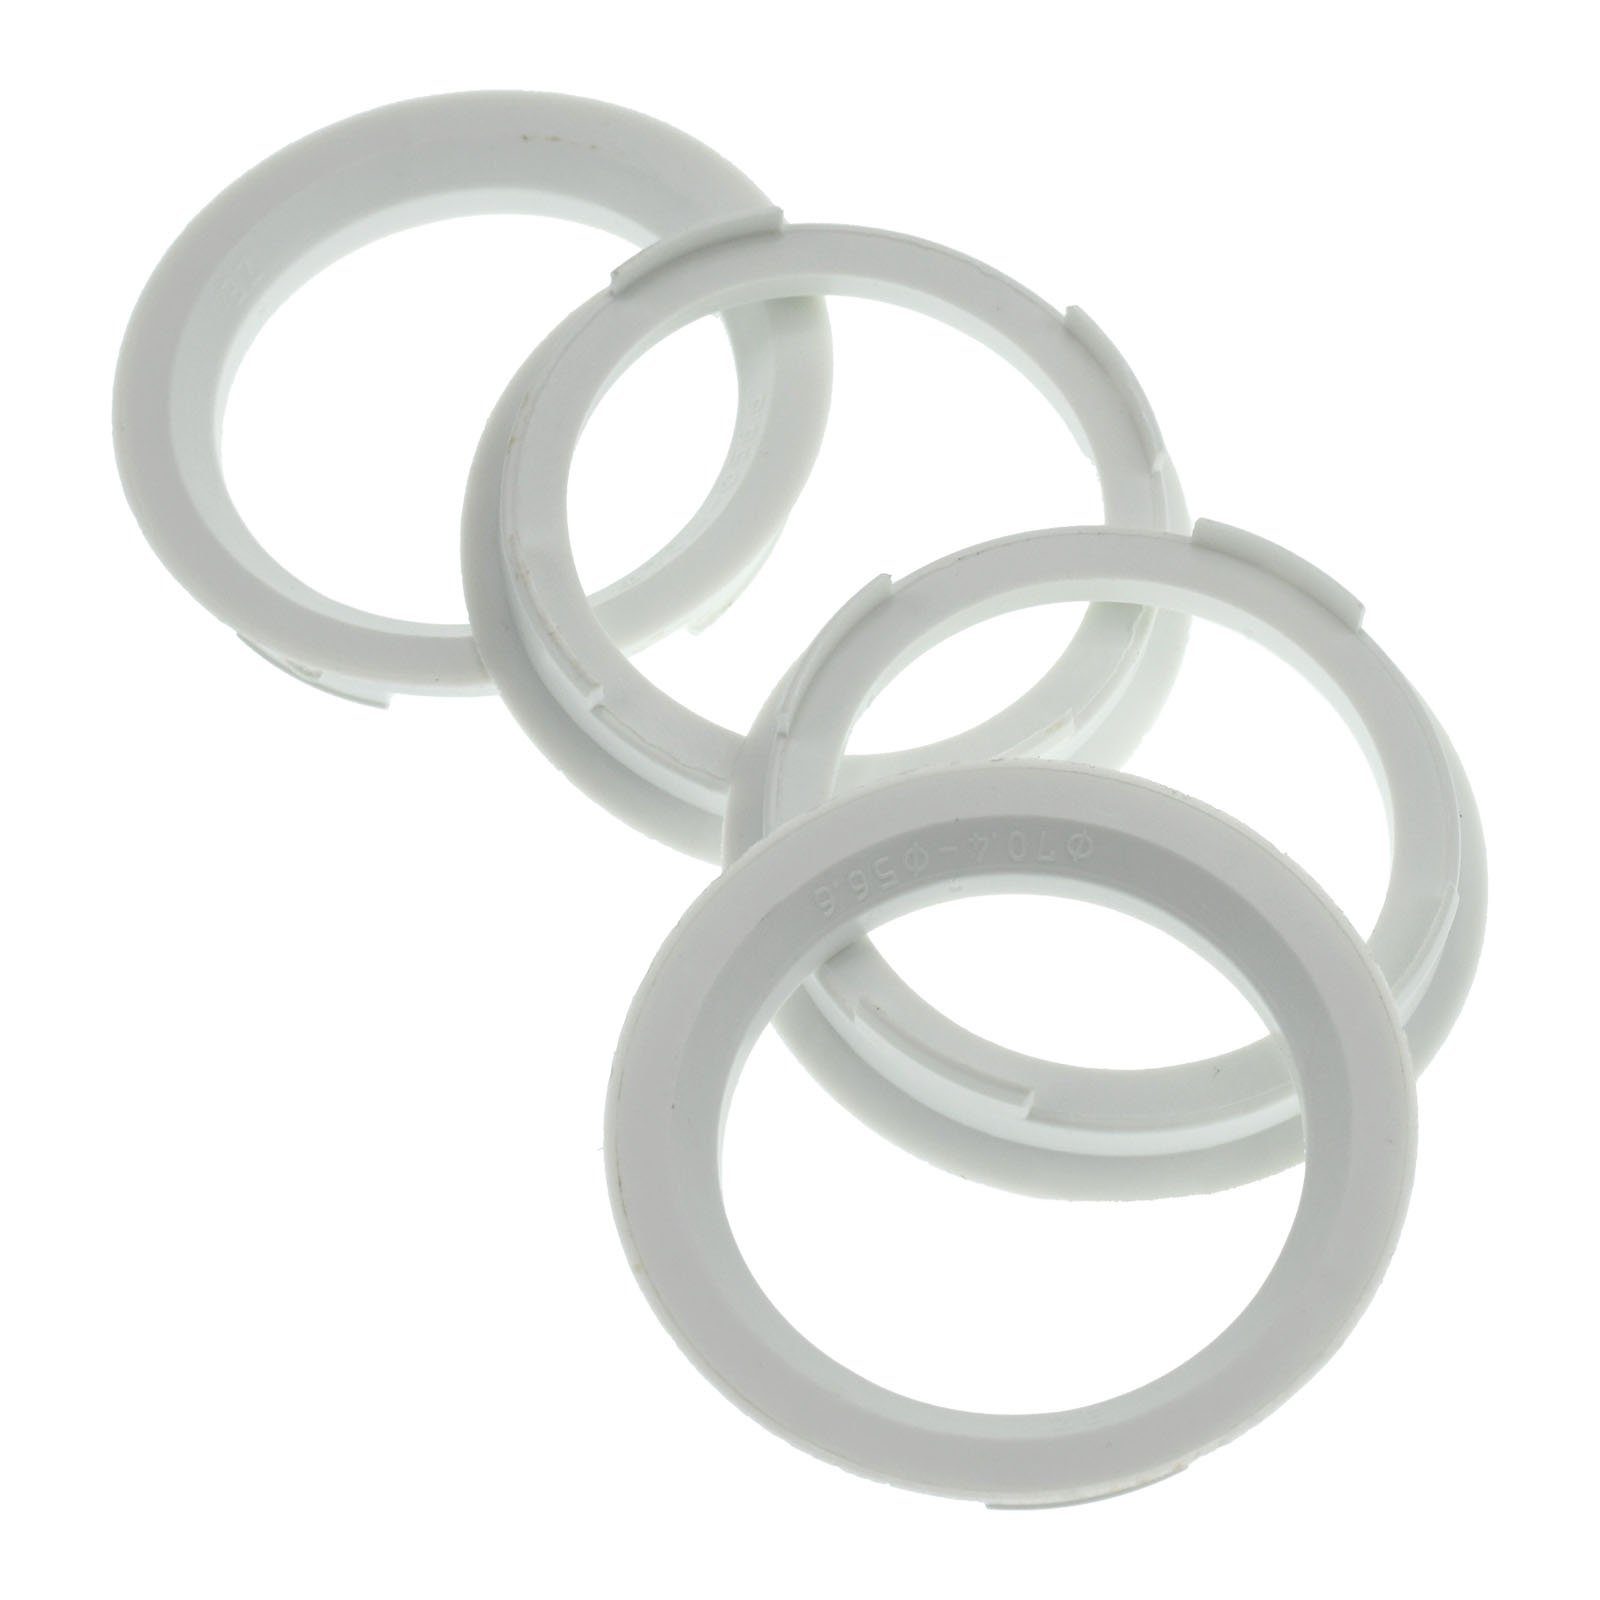 RKC Reifenstift 4x Zentrierringe Weiß Felgen Ringe Made in Germany, Maße: 70,4 x 56,6 mm